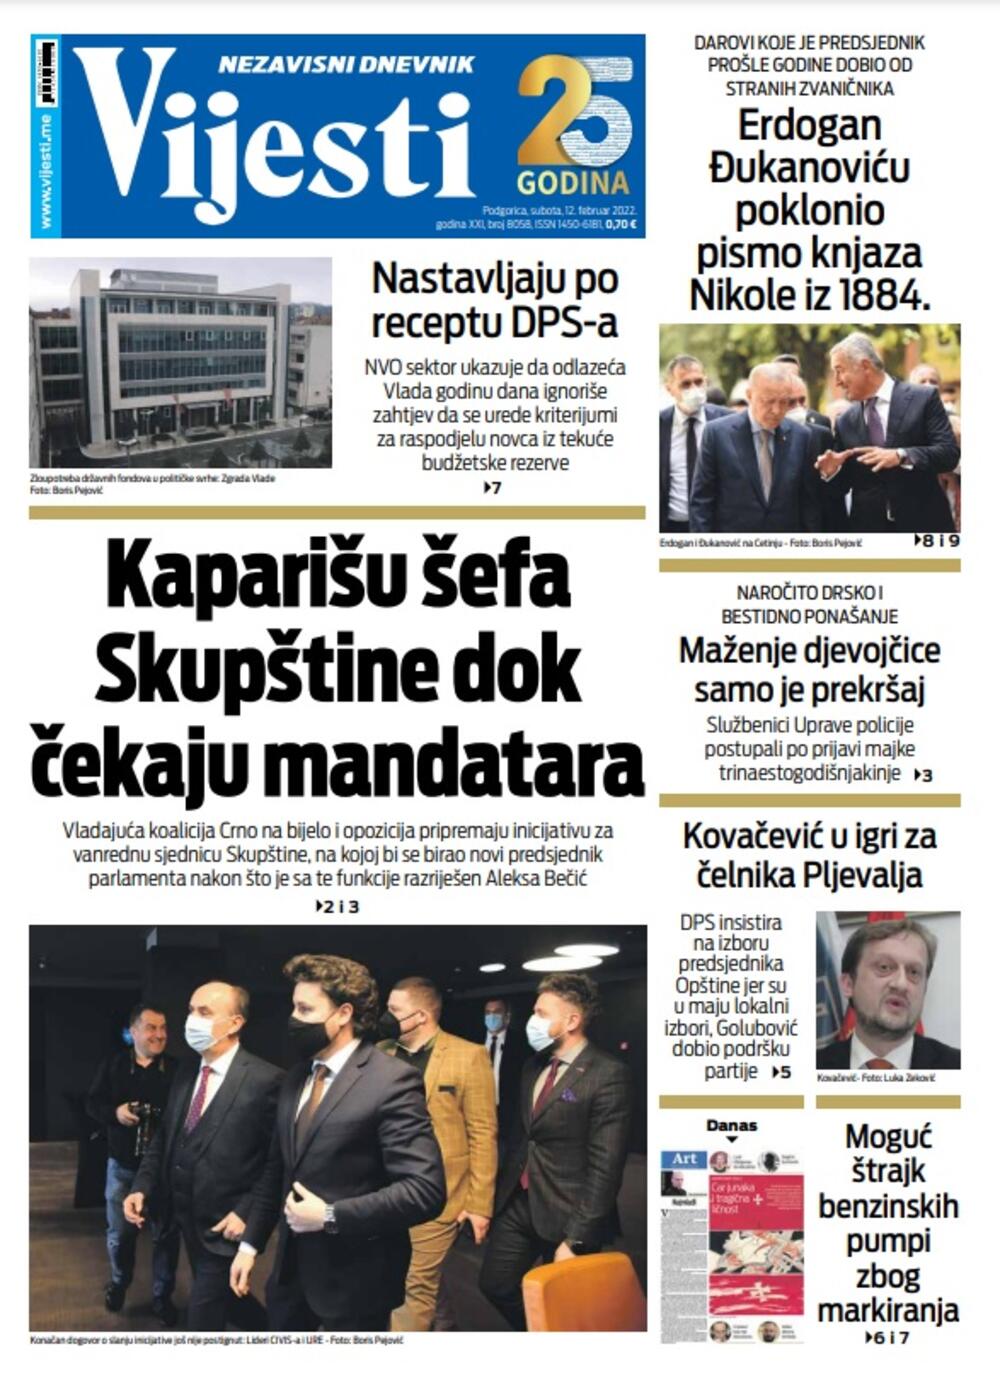 Naslovna strana "Vijesti" za 12. februar 2022., Foto: Vijesti